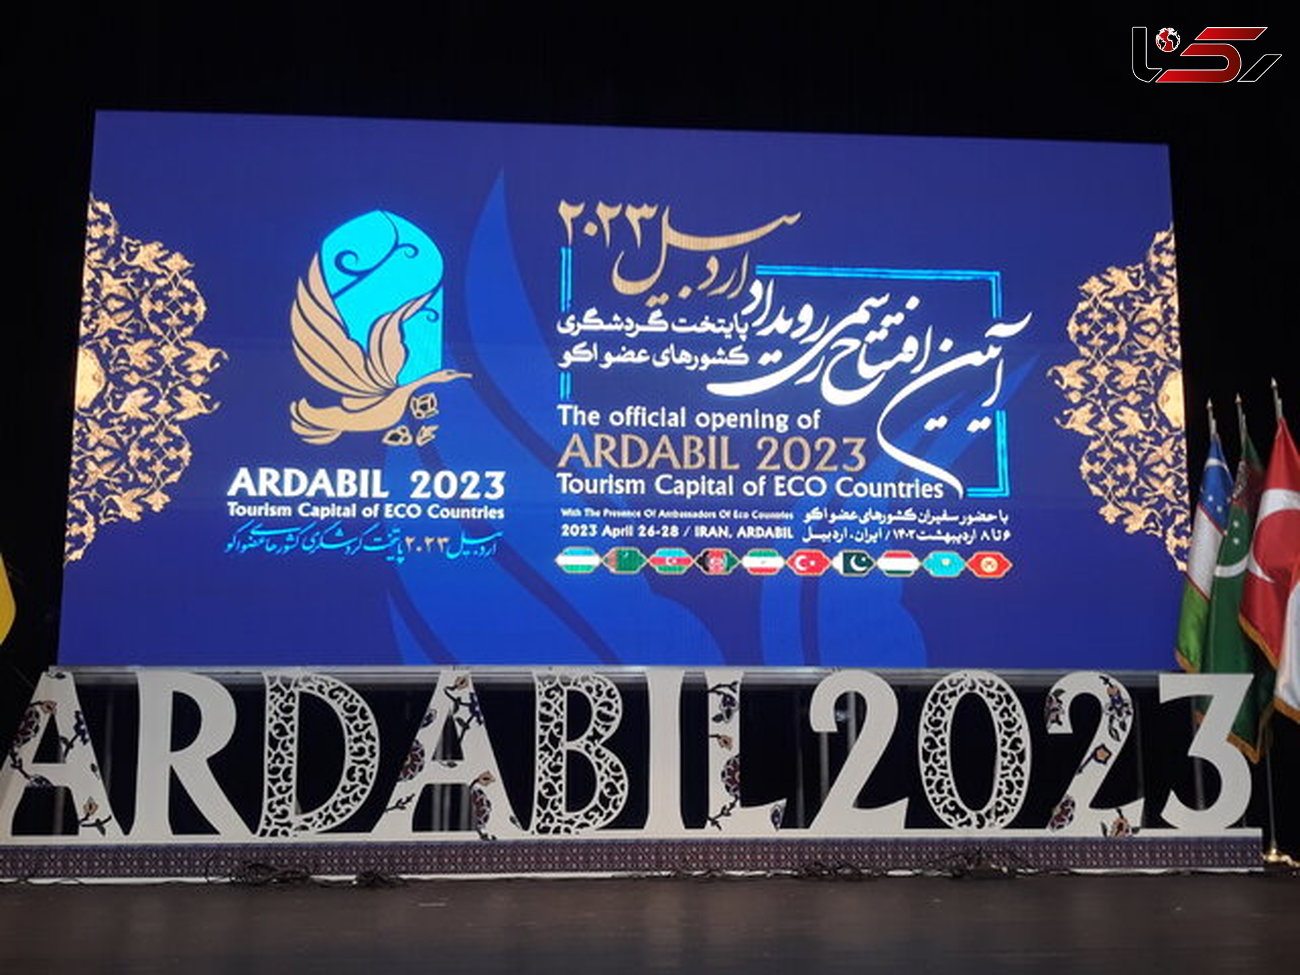 افتتاحیه رویداد گردشگری اردبیل ۲۰۲۳ در فدک اردبیل